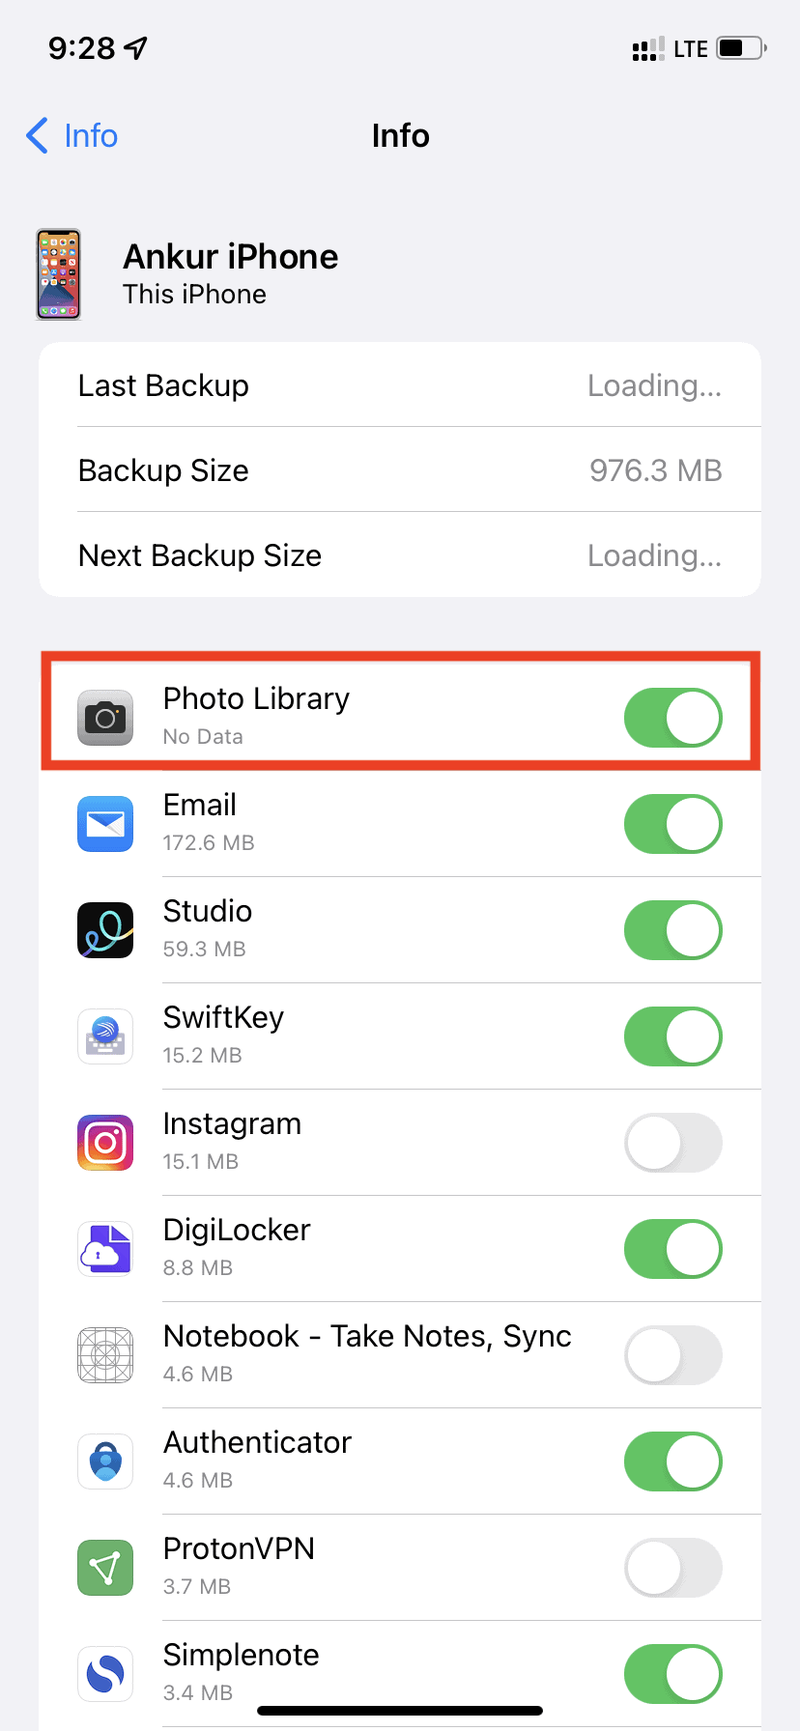 Fotobibliothek in den iCloud Backup-Einstellungen aktiviert